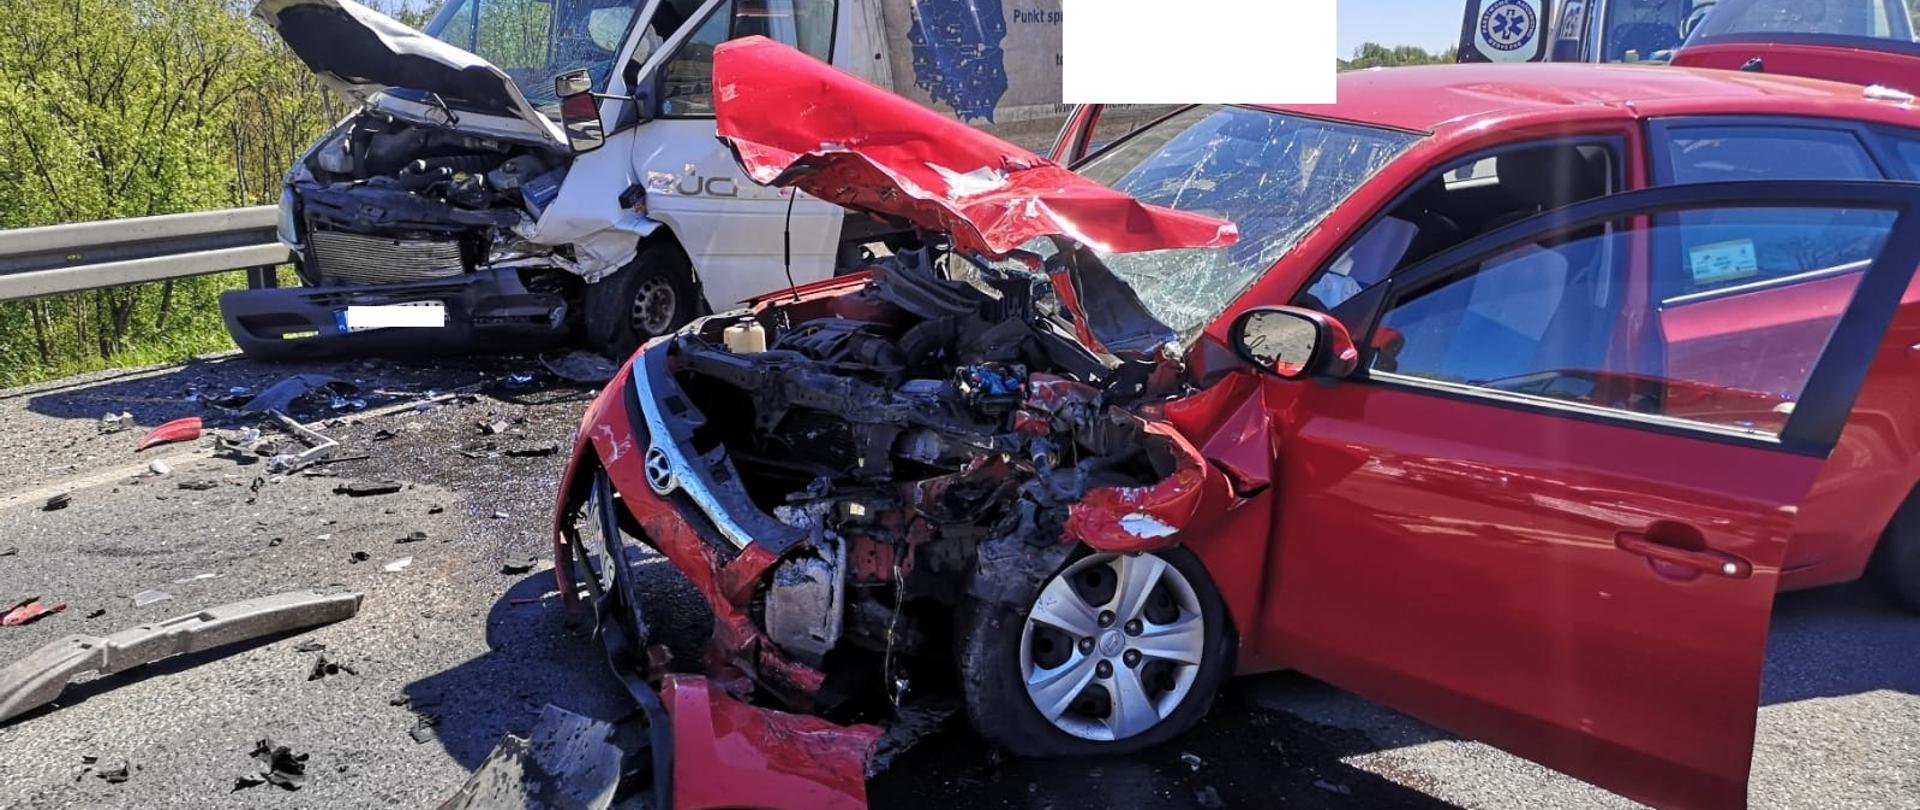 Na zdjęciu widoczny jest czerwony samochód osobowy z rozbitą komorą silnika. Maska komory silnika jest podniesiona, zderzak, błotniki przednie całkowicie zniszczone. Na drugim planie widoczny samochód dostawczy z uszkodzonym przodem - podobnie jak w samochodzie osobowym